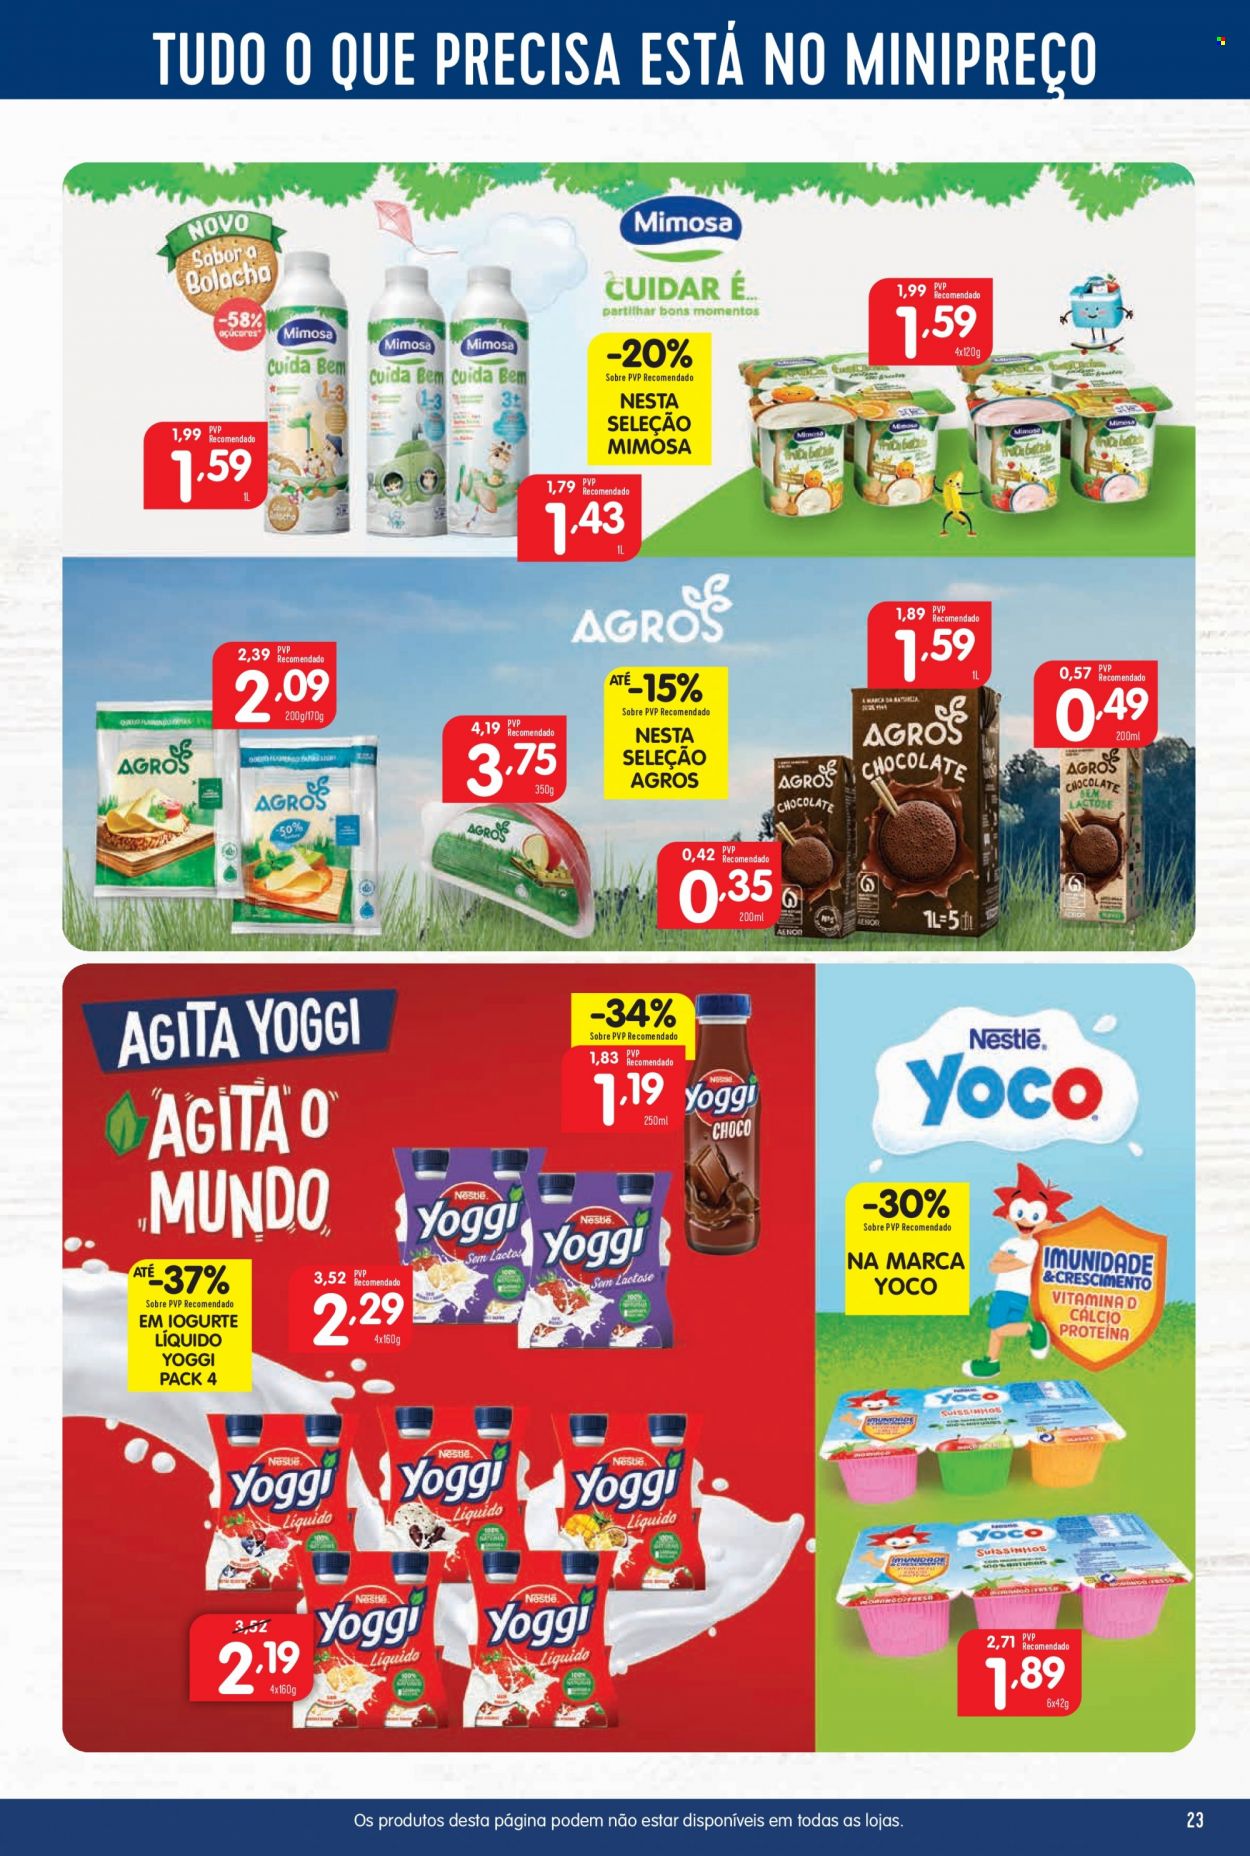 thumbnail - Folheto Minipreço - 2.2.2023 - 8.2.2023 - Produtos em promoção - iogurte, iogurte líquido, Mimosa, Nestlé, bolachas. Página 23.